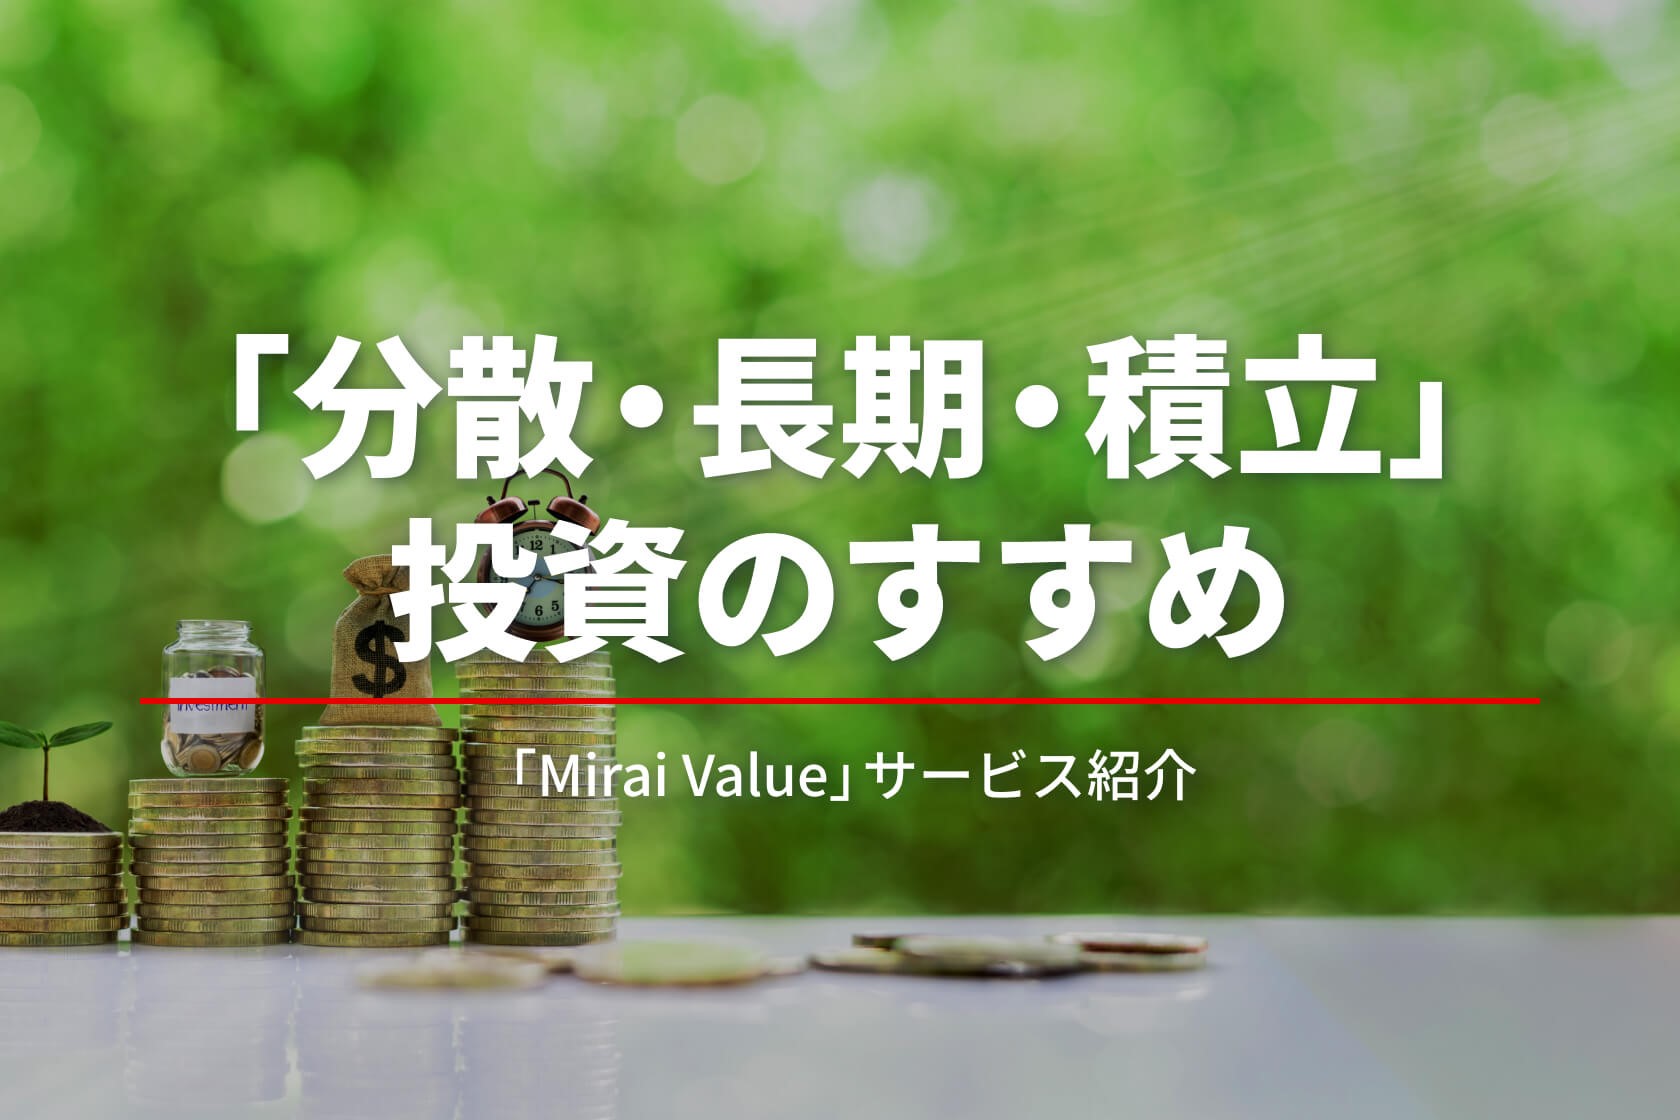 プロが運用する「分散・長期・積立」投資がオススメな3つの理由　「Mirai Value」サービス紹介